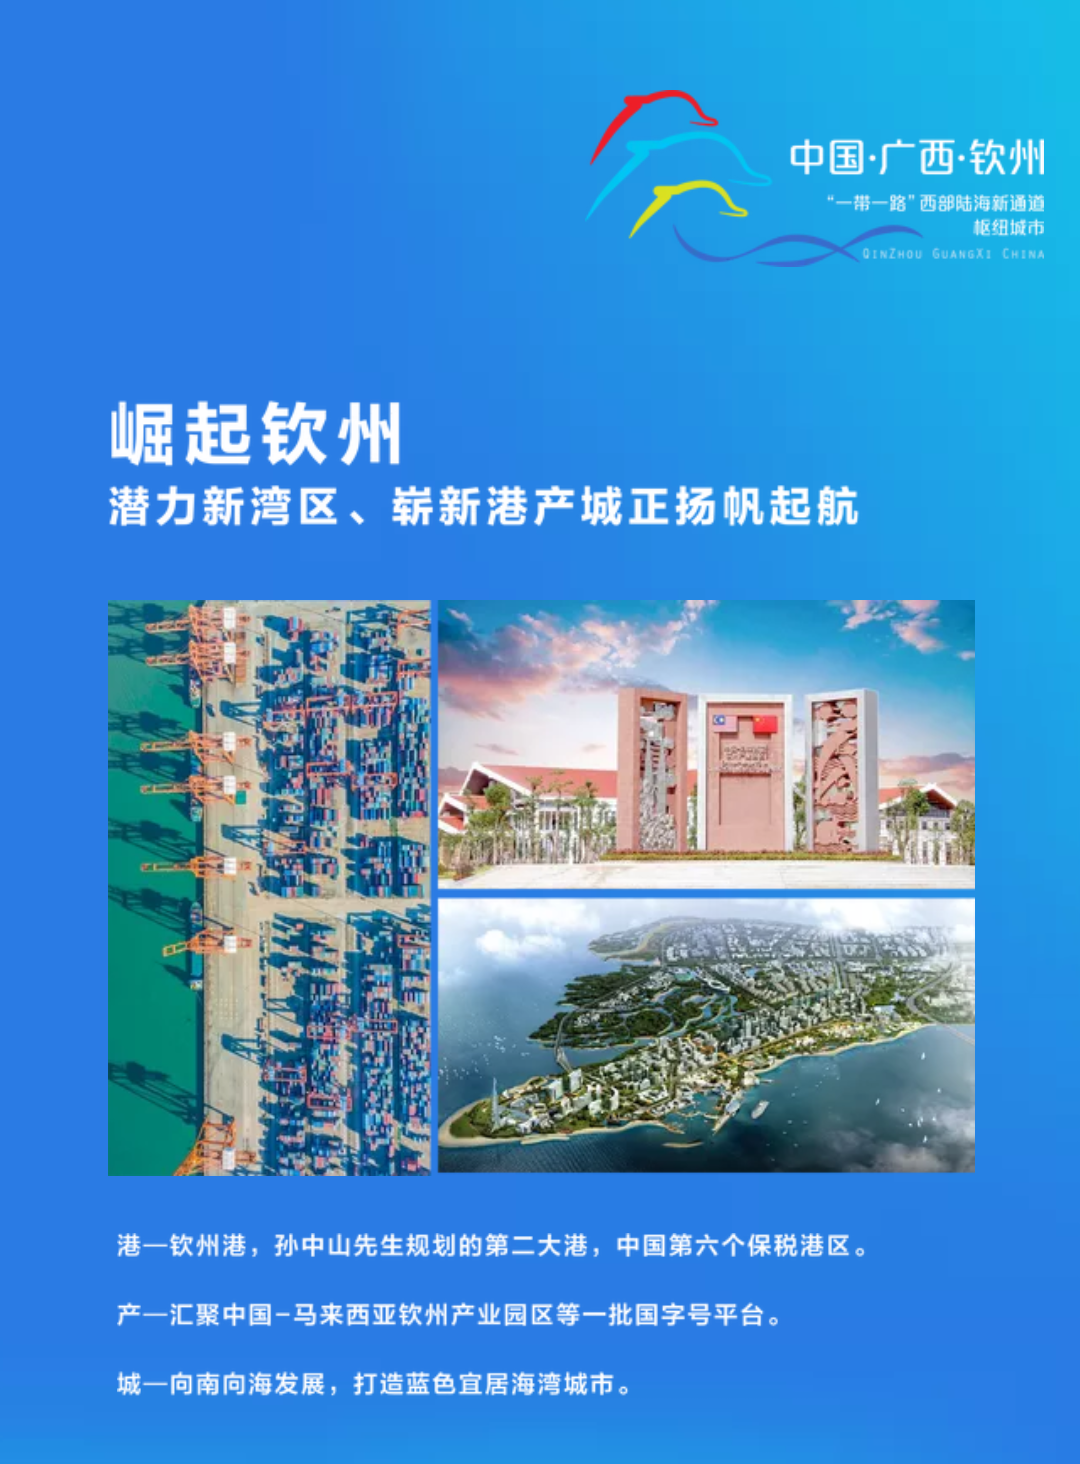 2019钦州城市投资推介暨湾区价值峰会将于广州举办